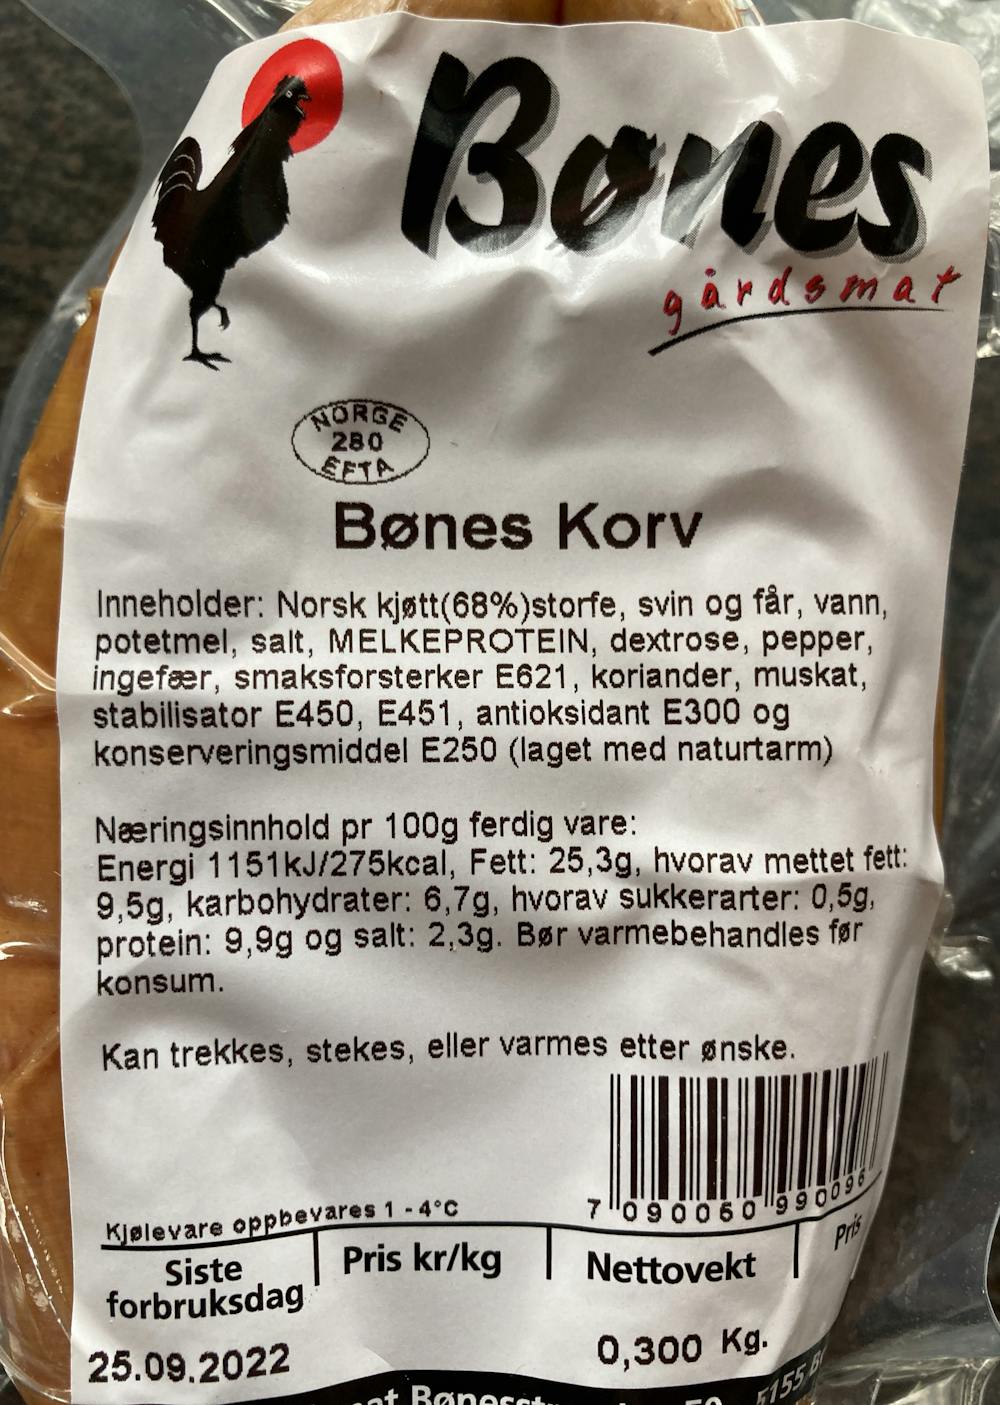 Ingrediensliste - Bønes Korv, Bønes gårdsmat 